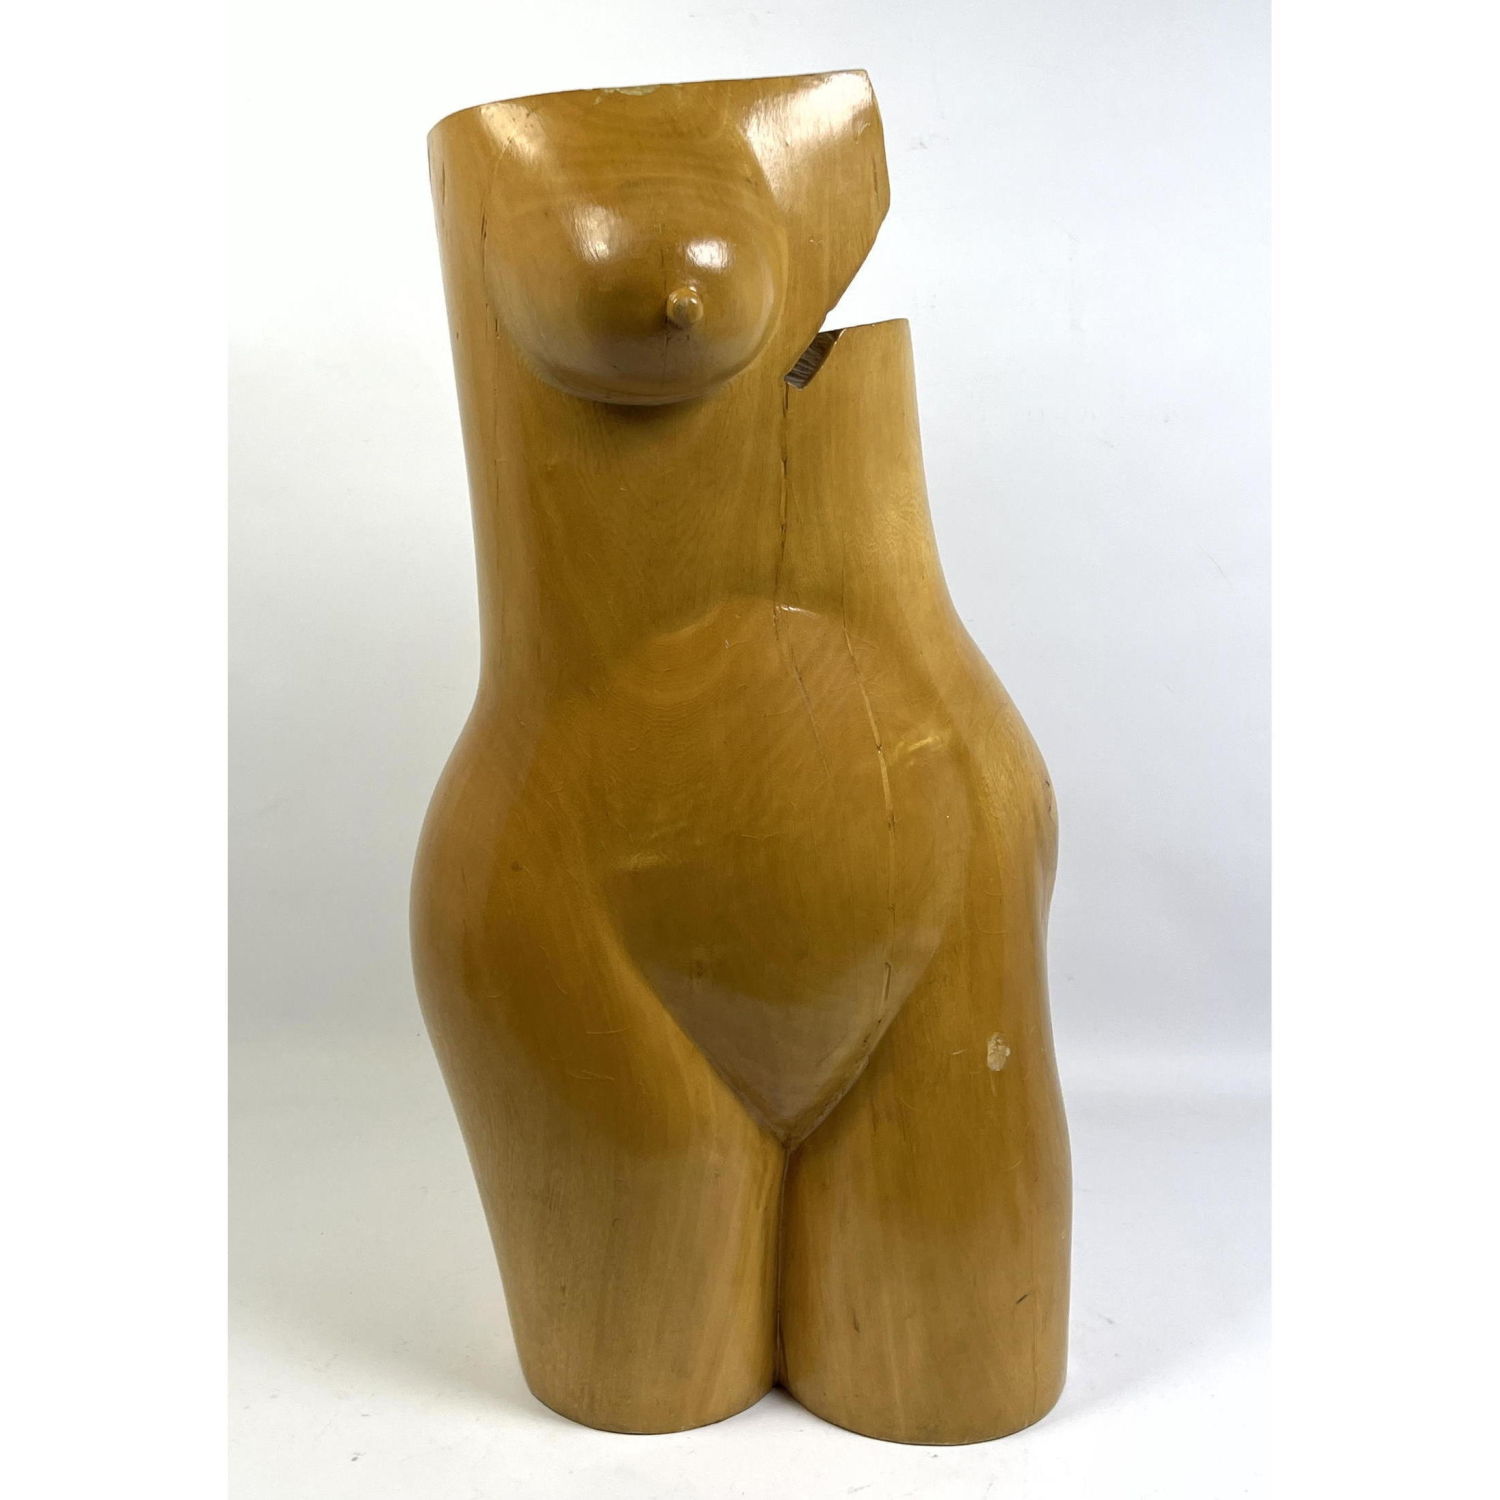 Carved wood Female Torso sculpture  2ba6d5